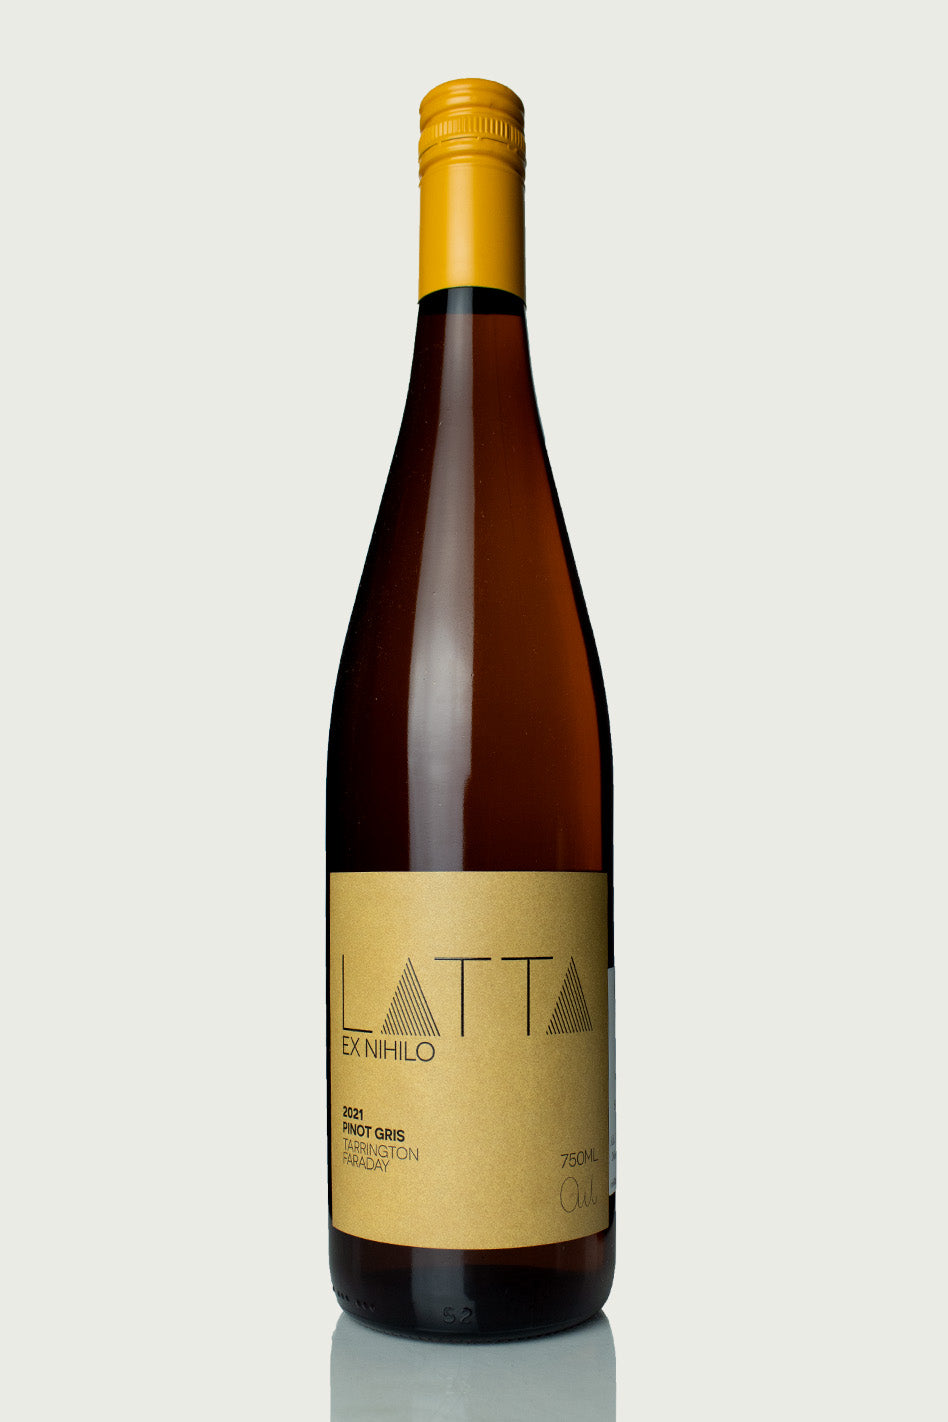 Latta 'Ex Nihilo' Pinot Gris 2021